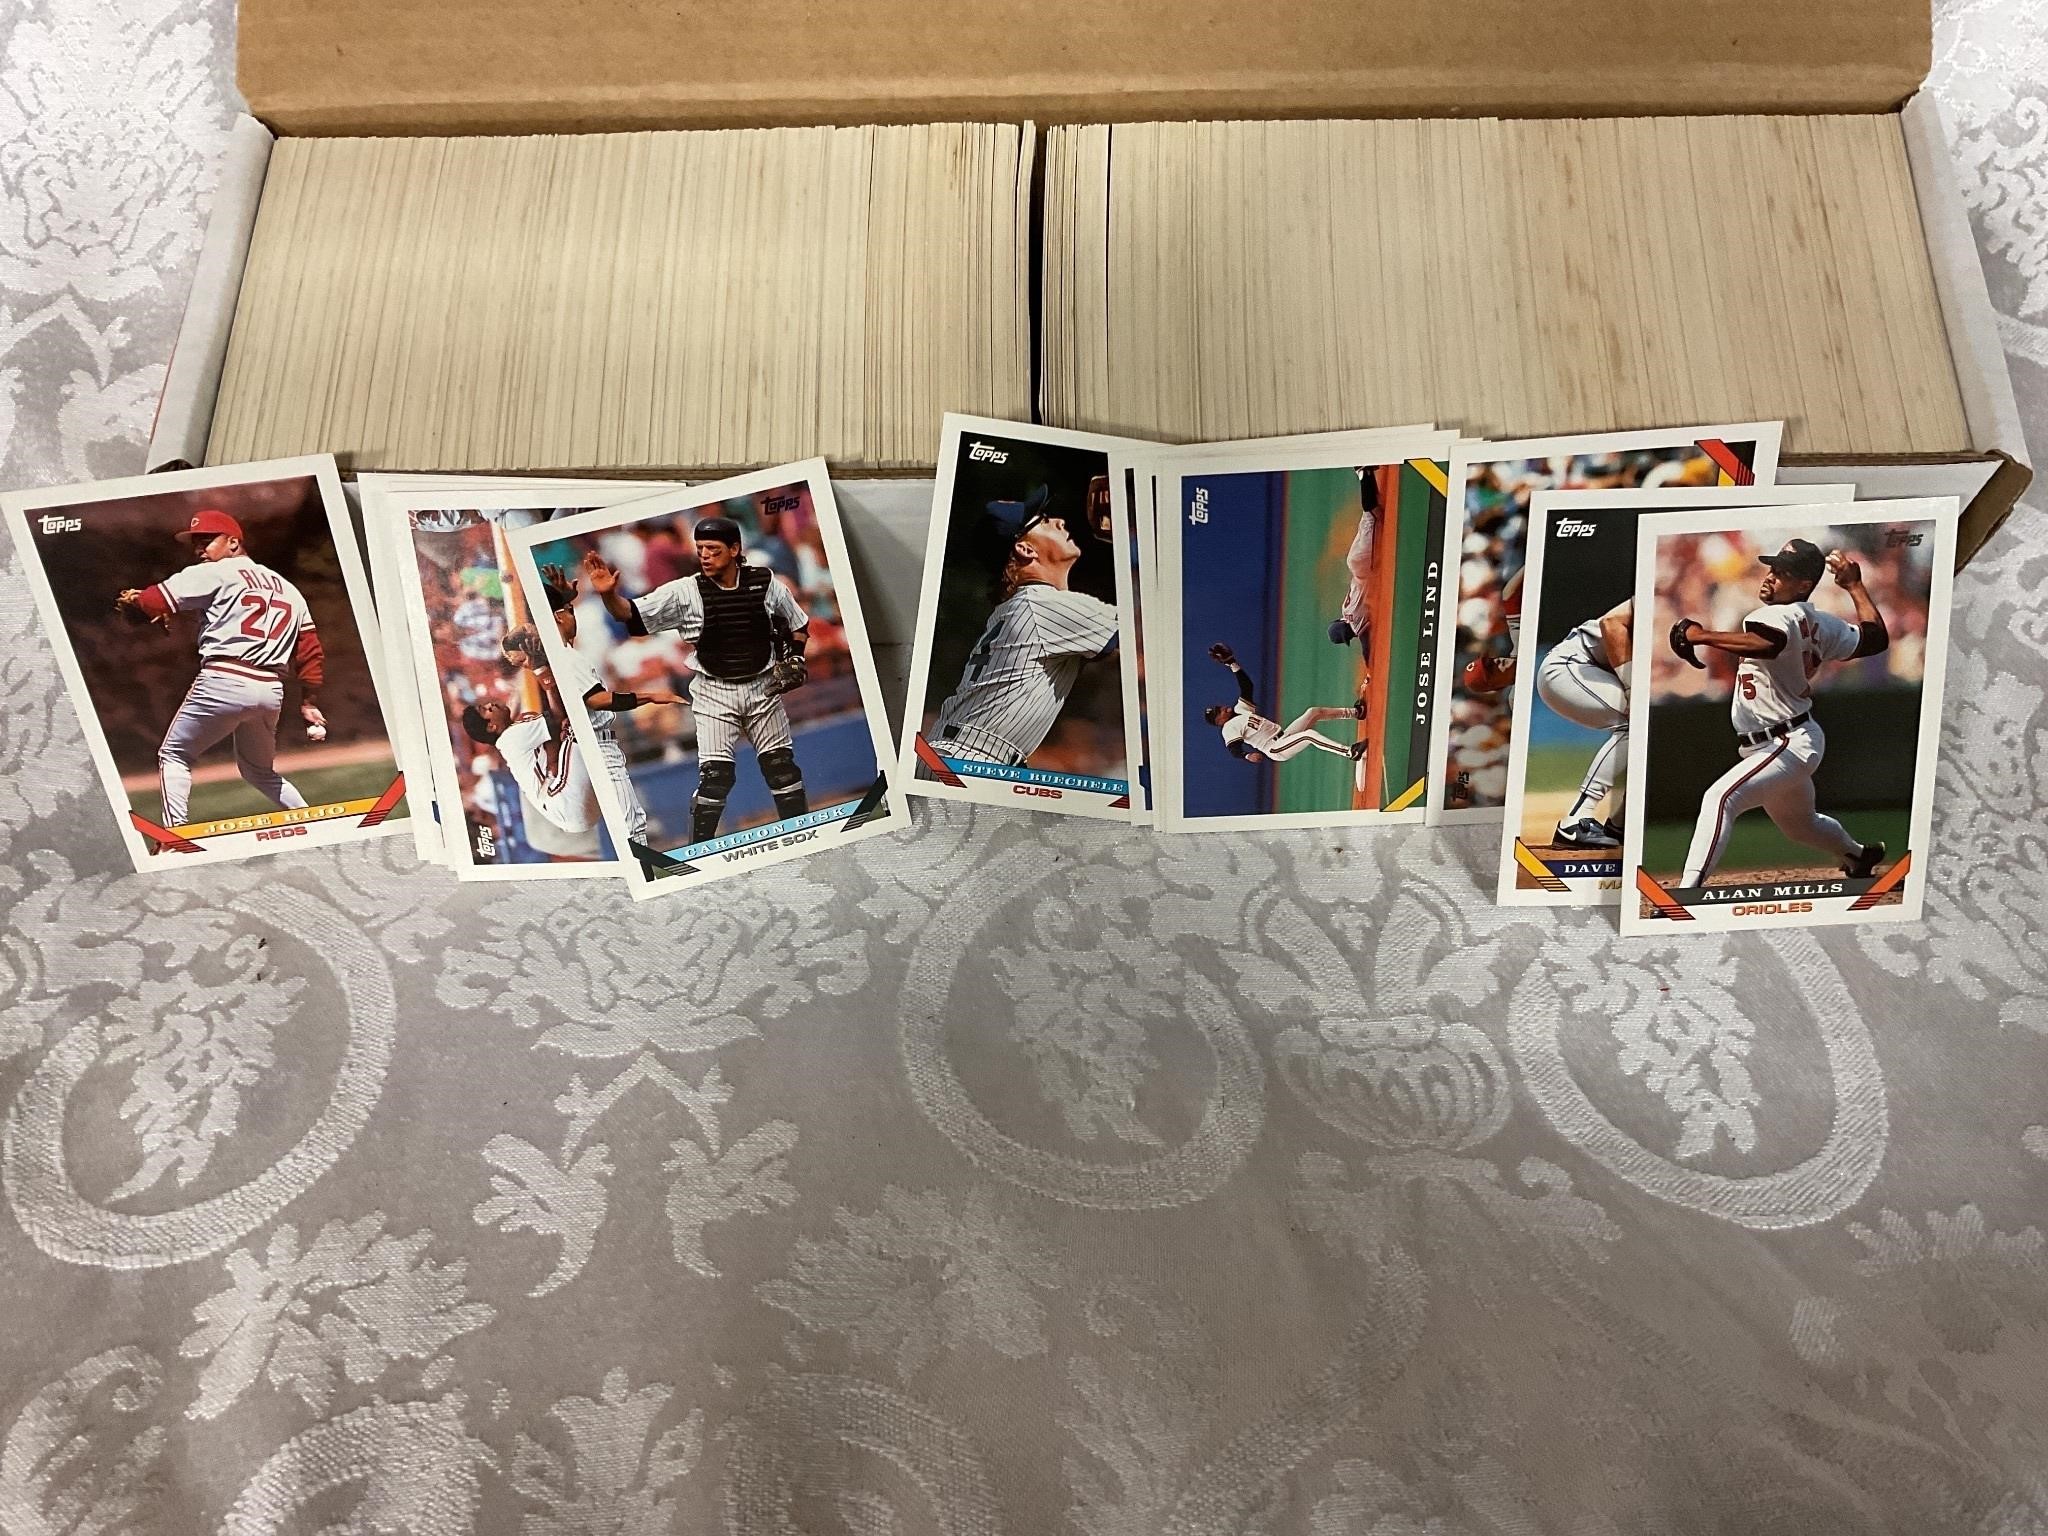 1993 Topps baseball cards